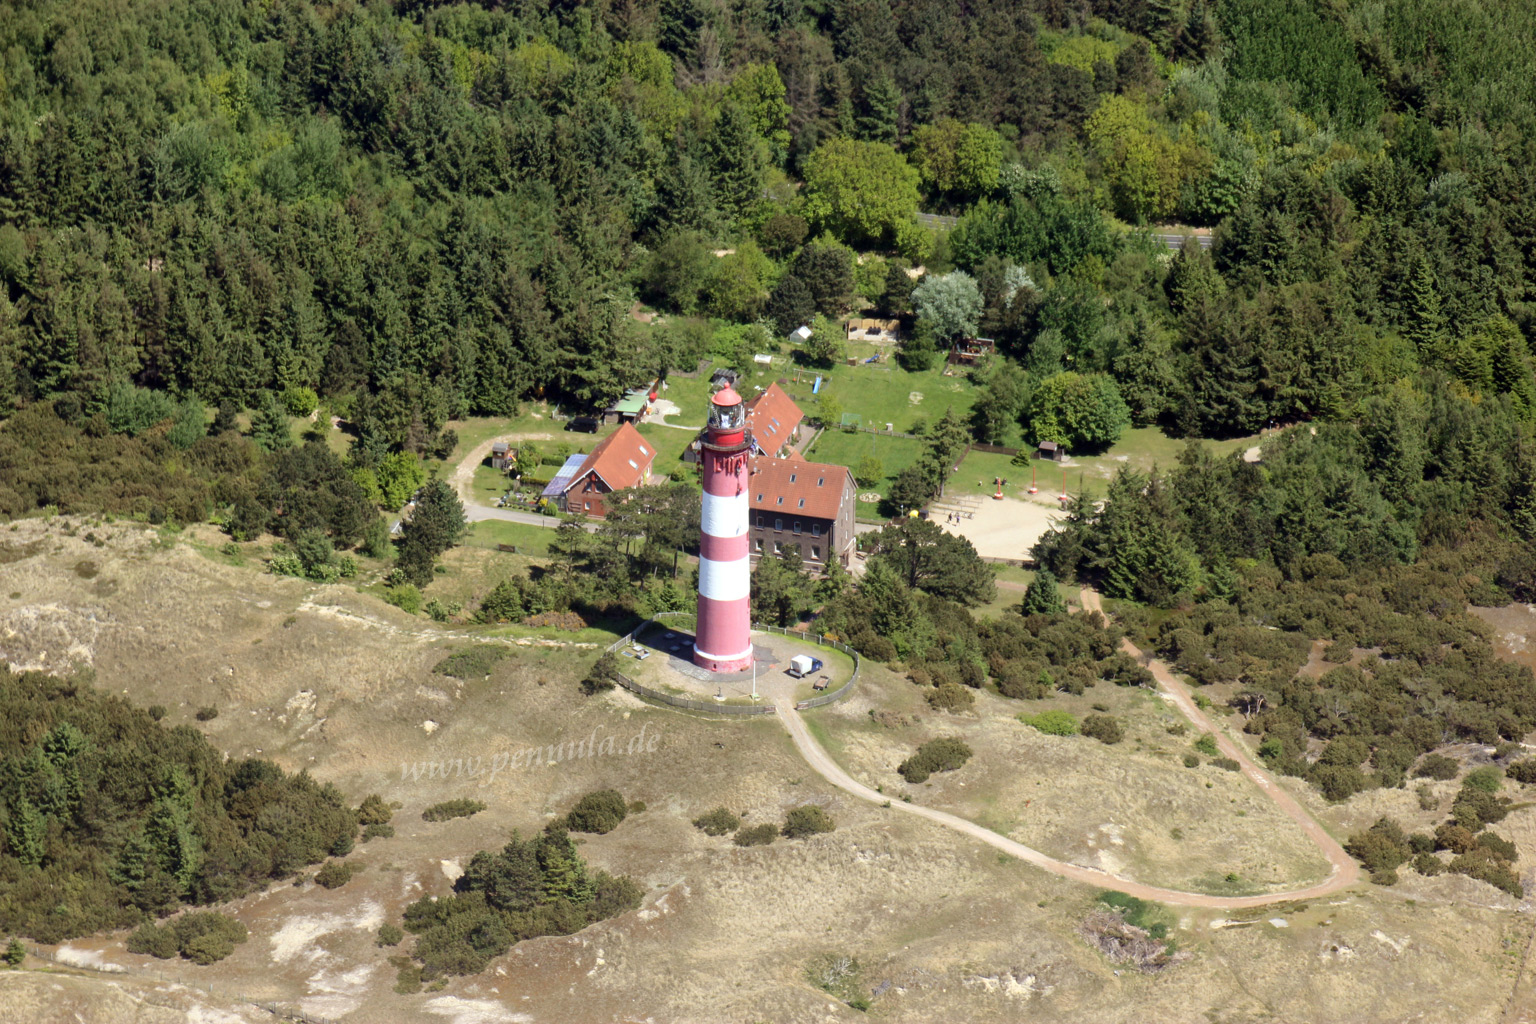 Leuchtturm auf der Insel Amrum